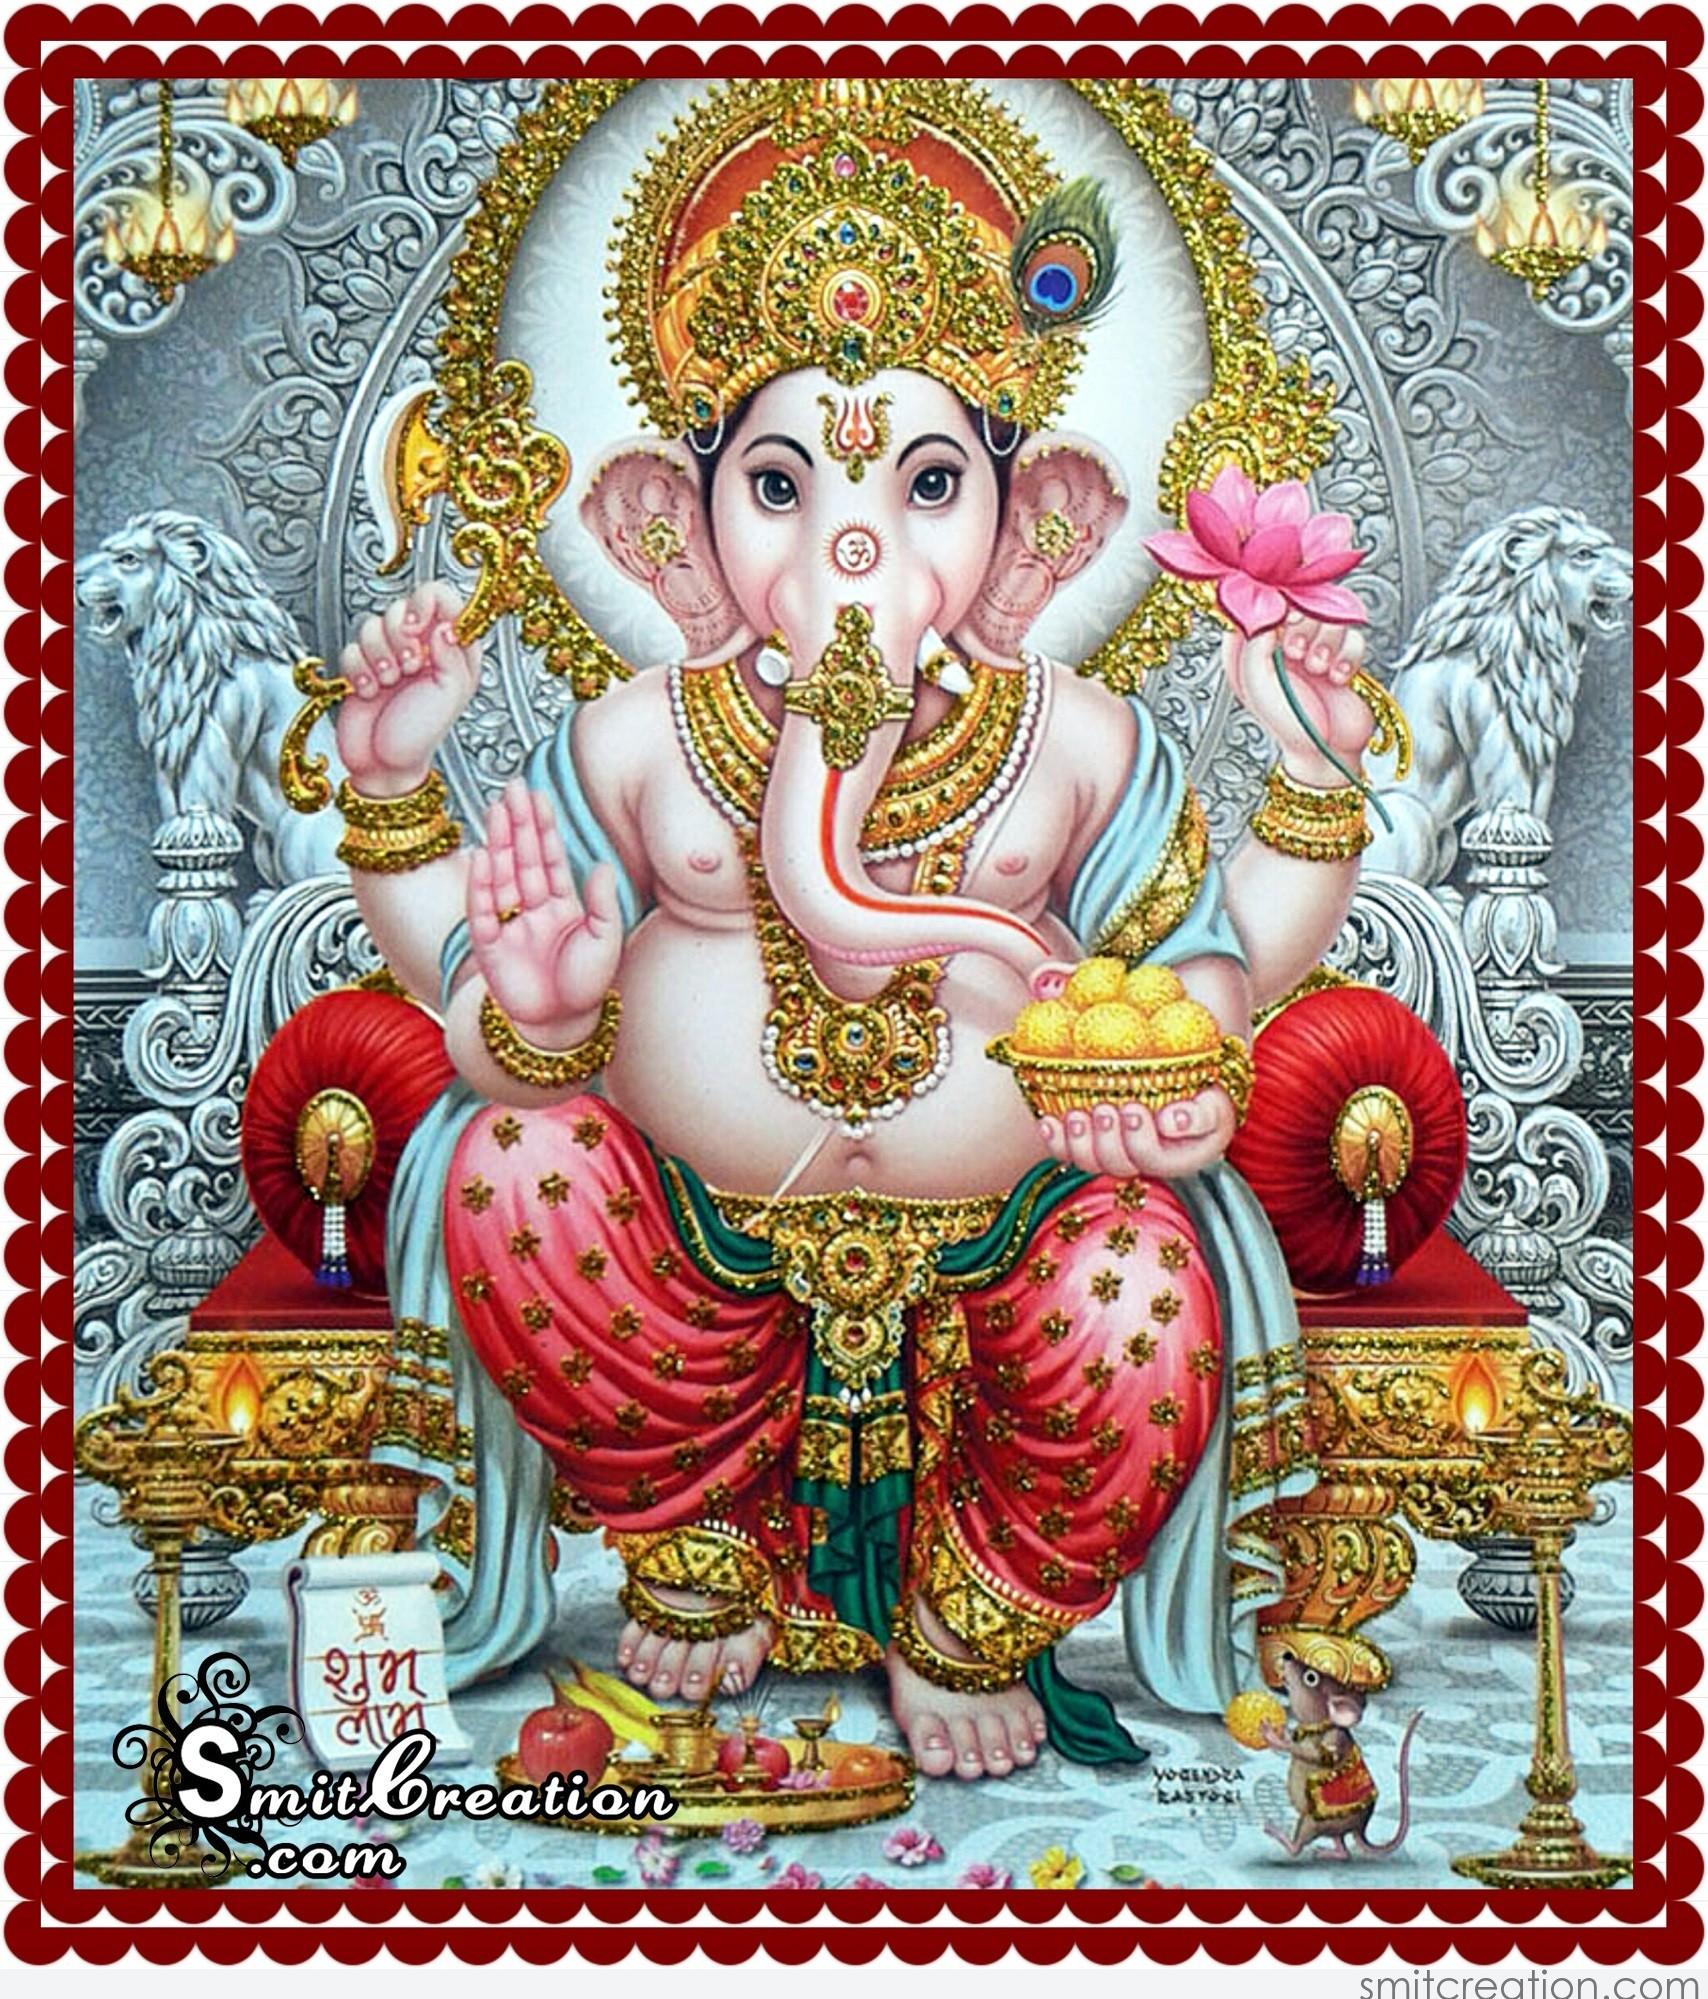 Ganesha Beautiful Image - SmitCreation.com